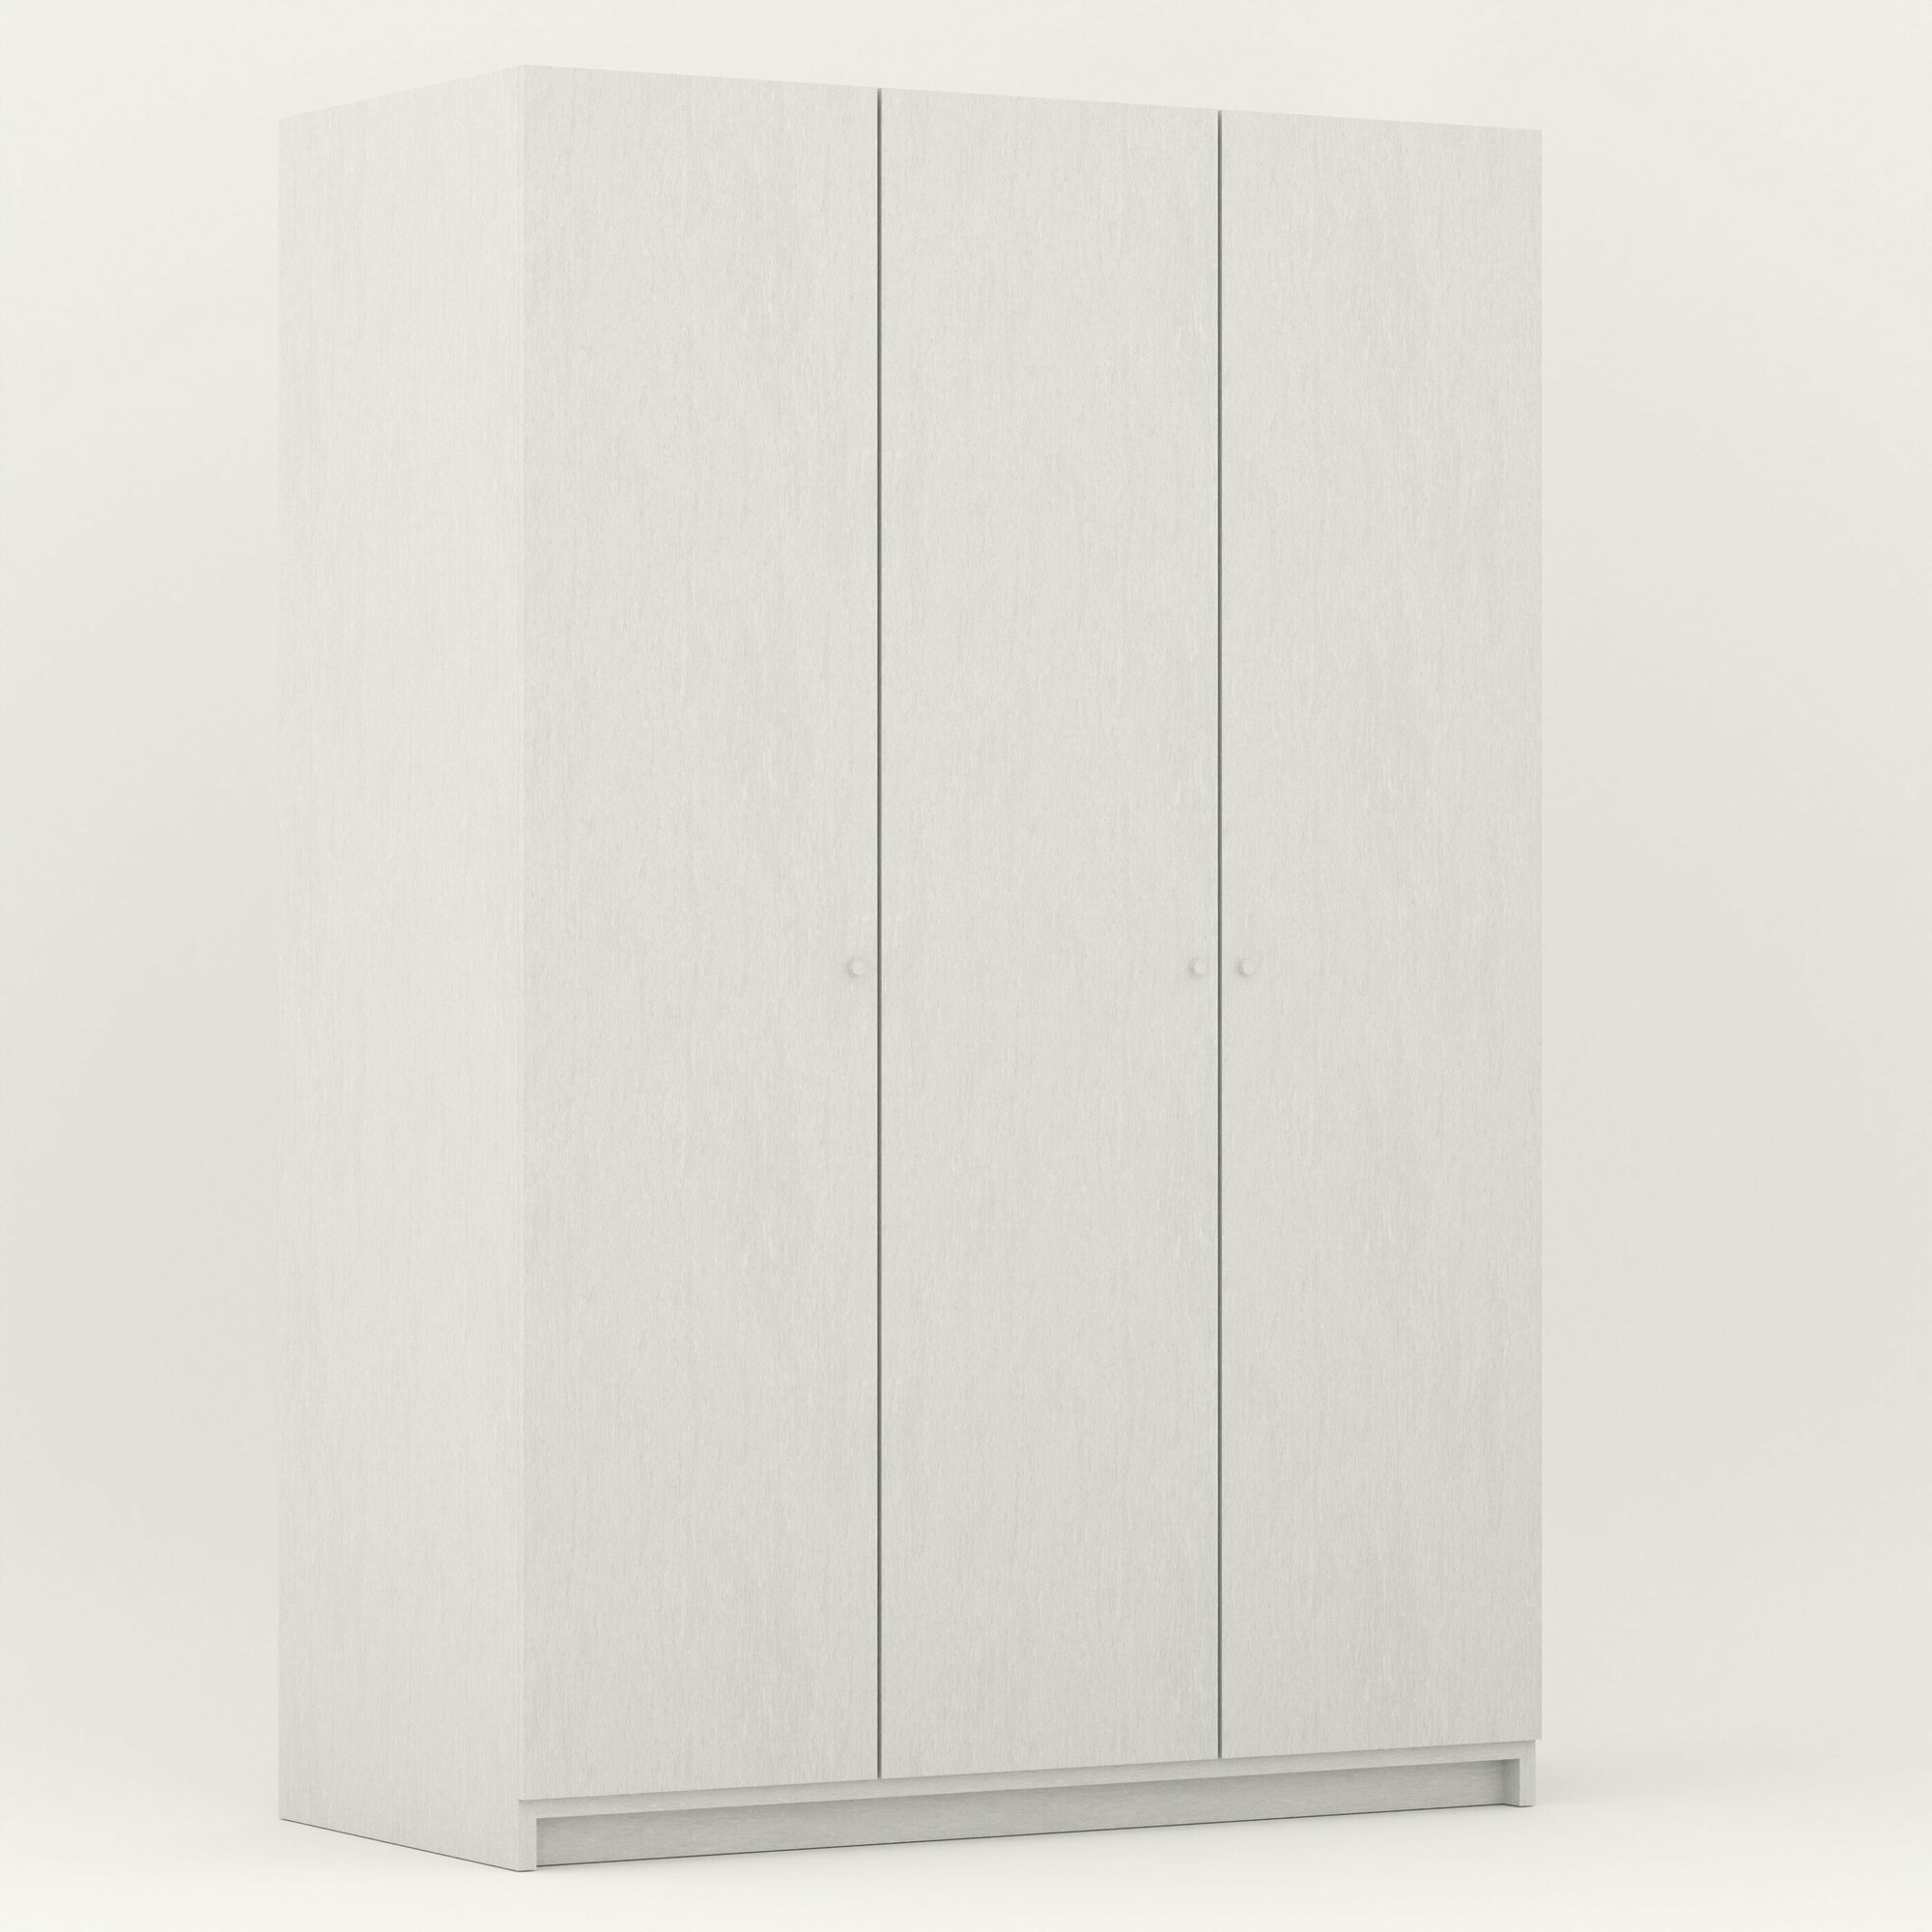 Шкаф распашной белого цвета трехдверный (Ширина 117 см, Высота 240 см Глубина 55 см) для прихожей, спальни, зала, гостинной. - фотография № 2